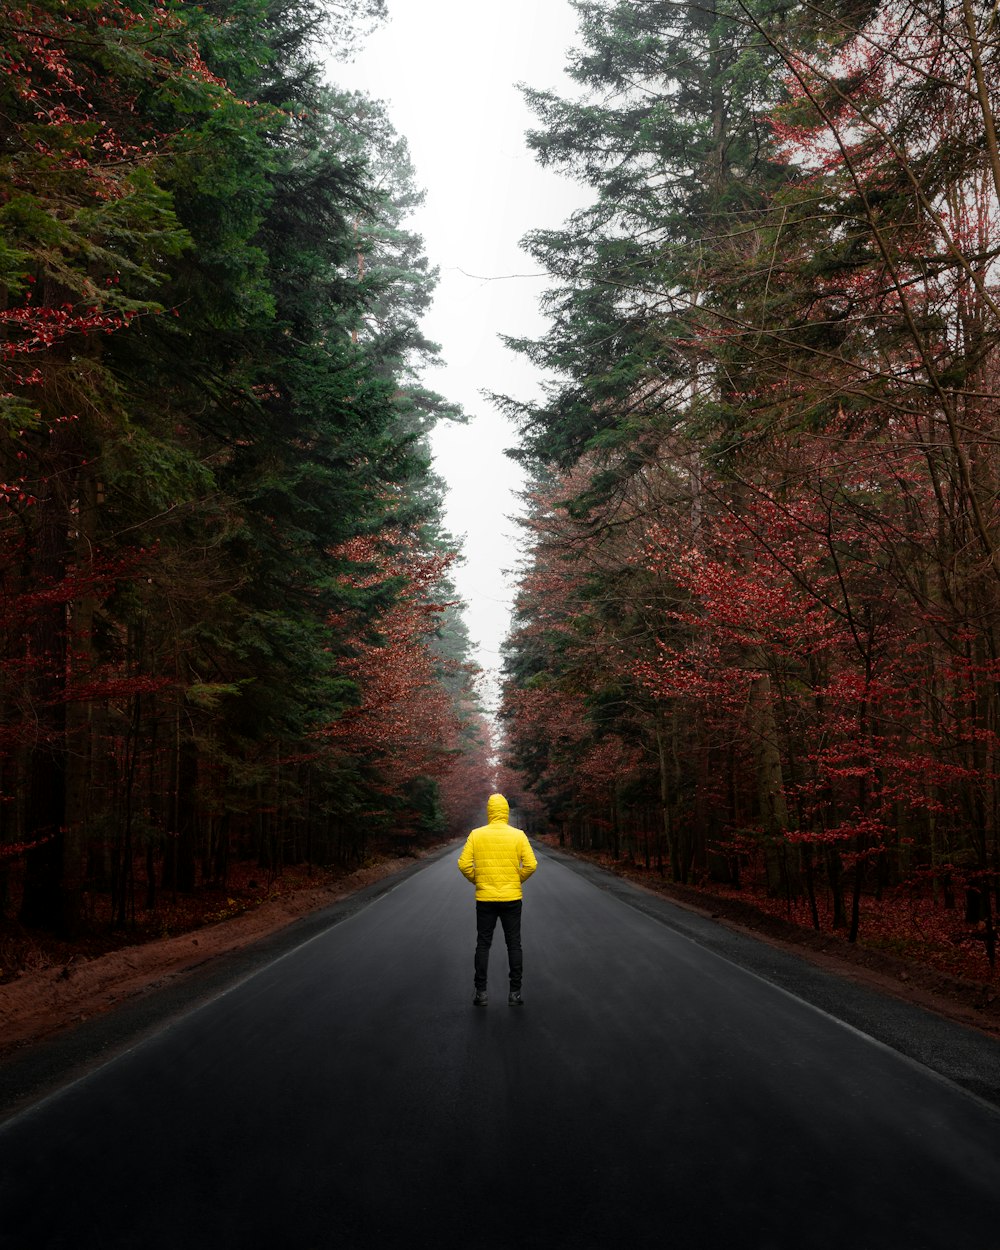 Una persona con una chaqueta amarilla caminando por una carretera